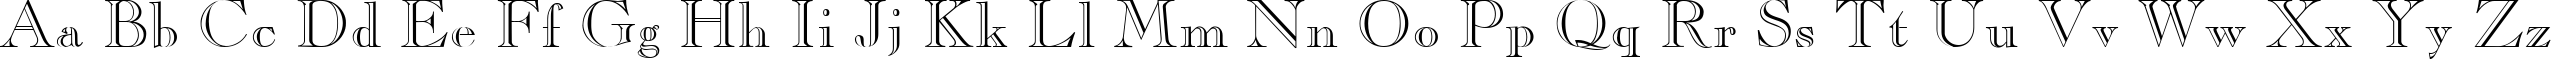 Пример написания английского алфавита шрифтом CasperOpenFace Plain:001.003